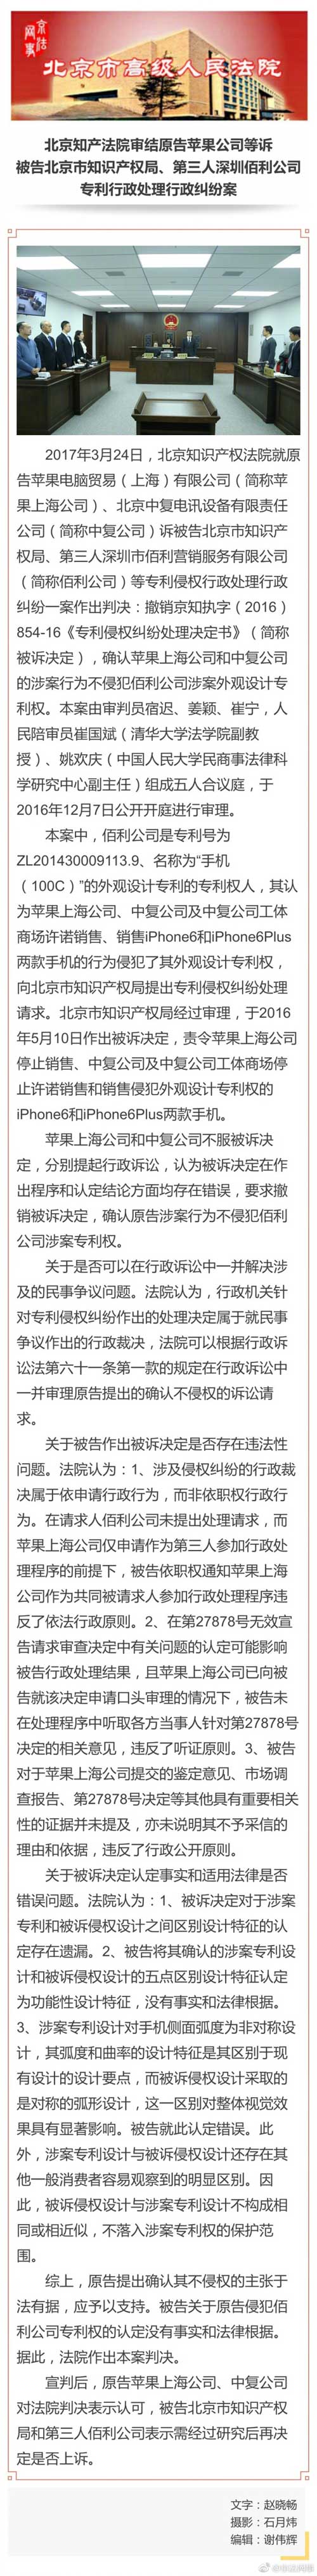 北京法院：撤销停售iPhone6决定 确认苹果公司不侵权